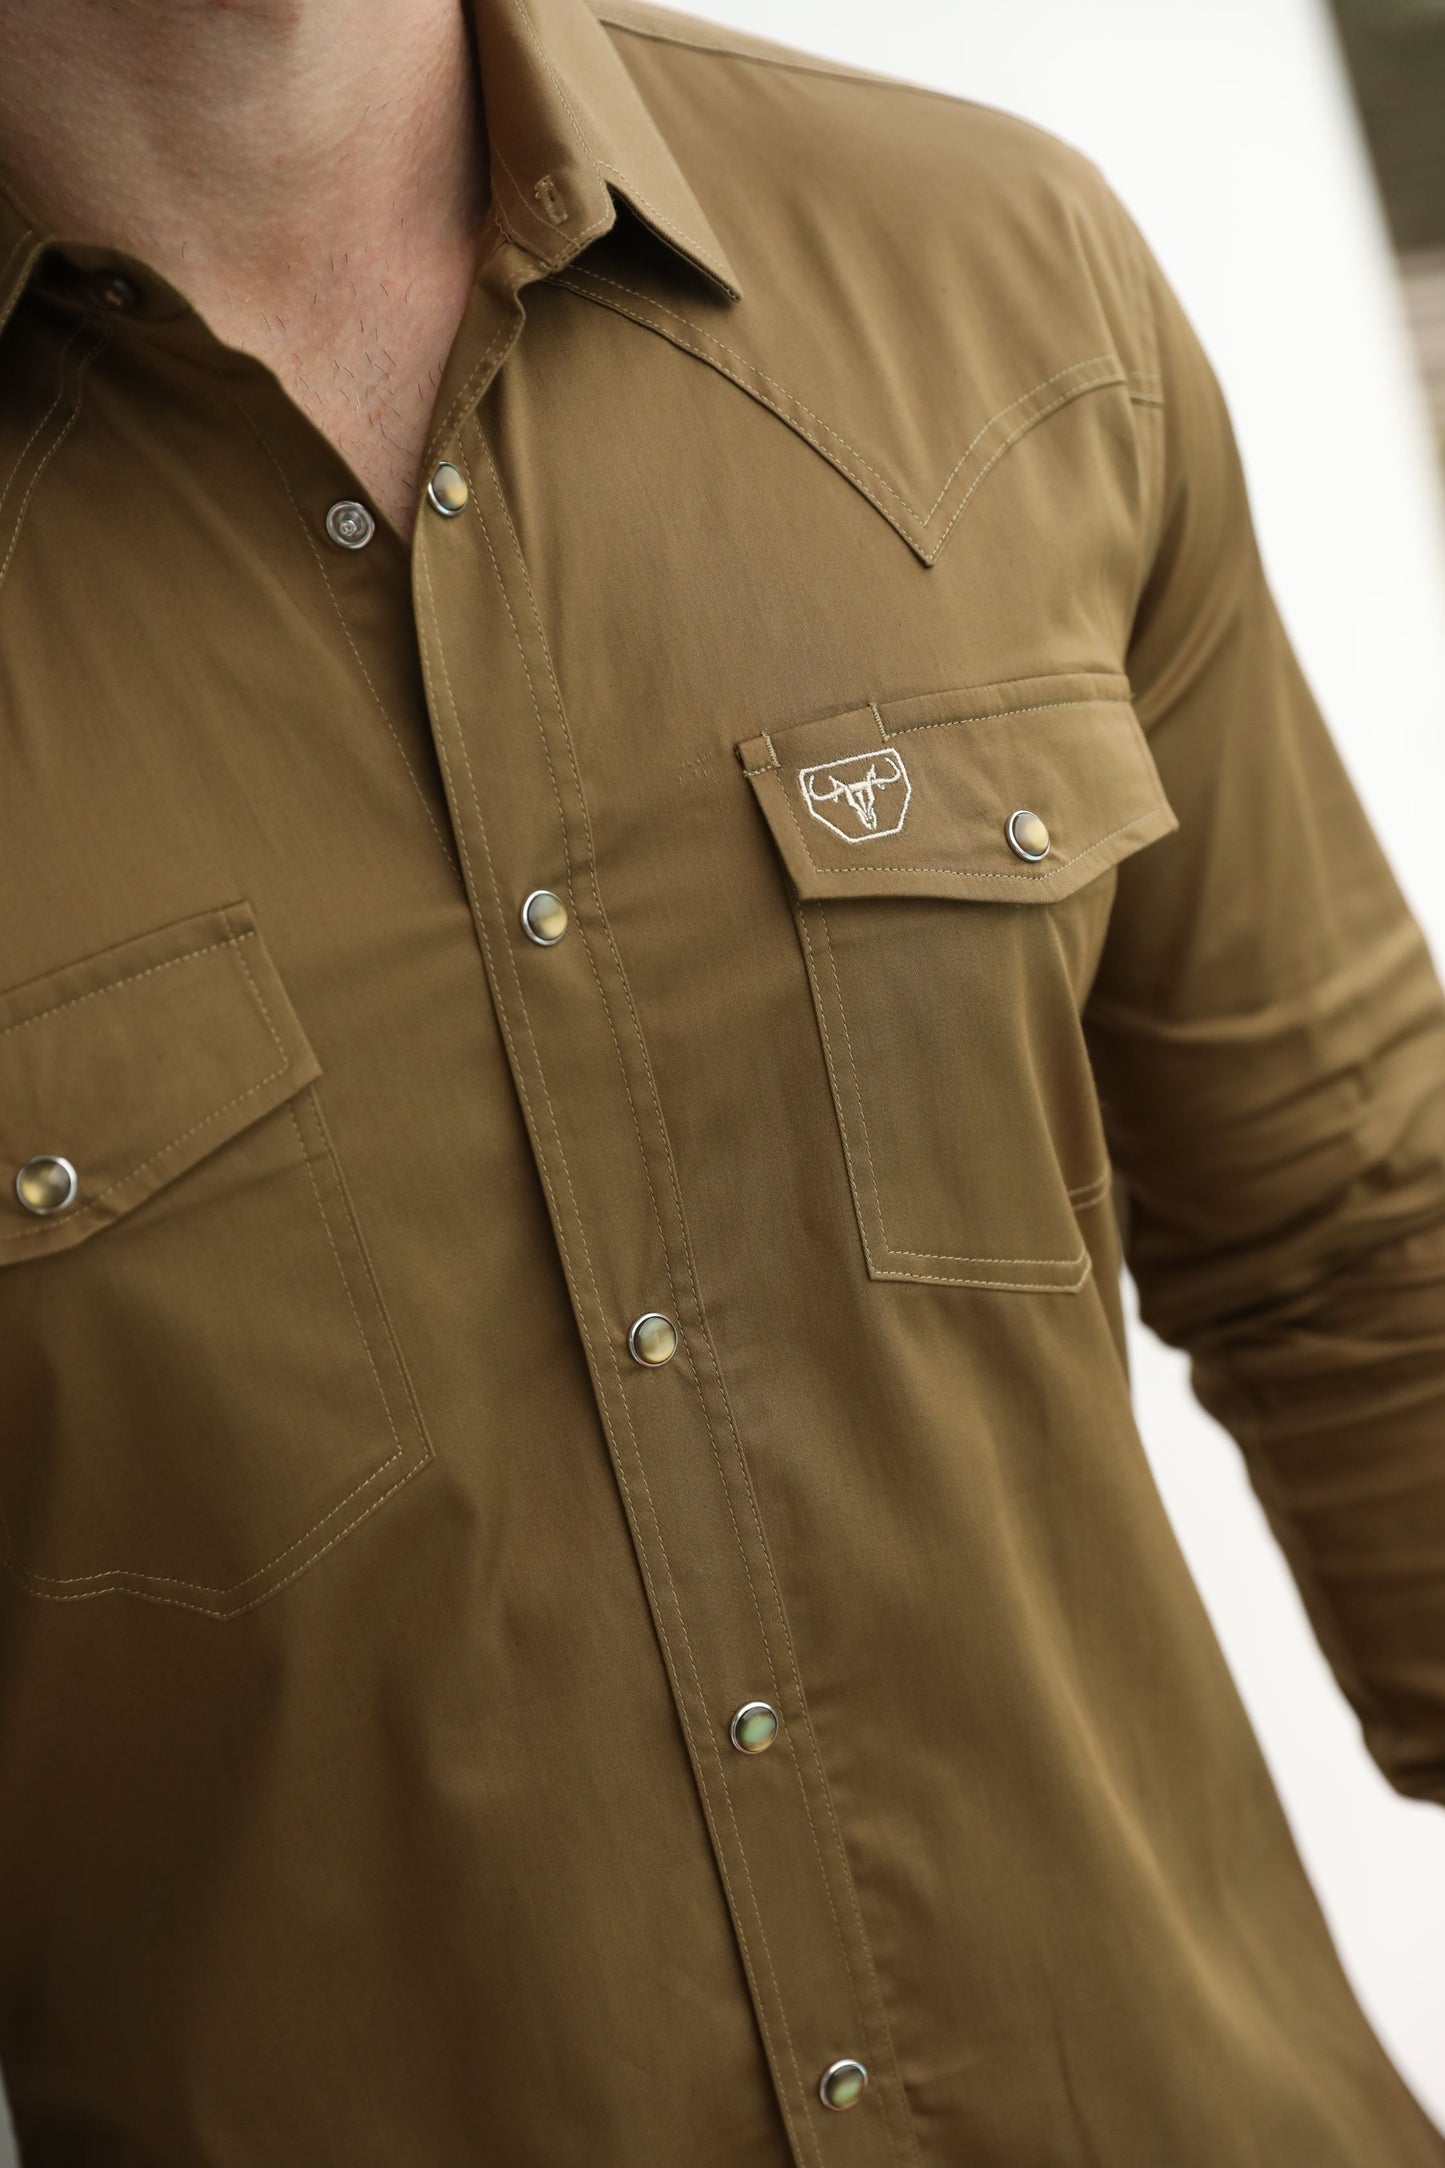 Men's Modern Fit Light Brown Dress Shirt